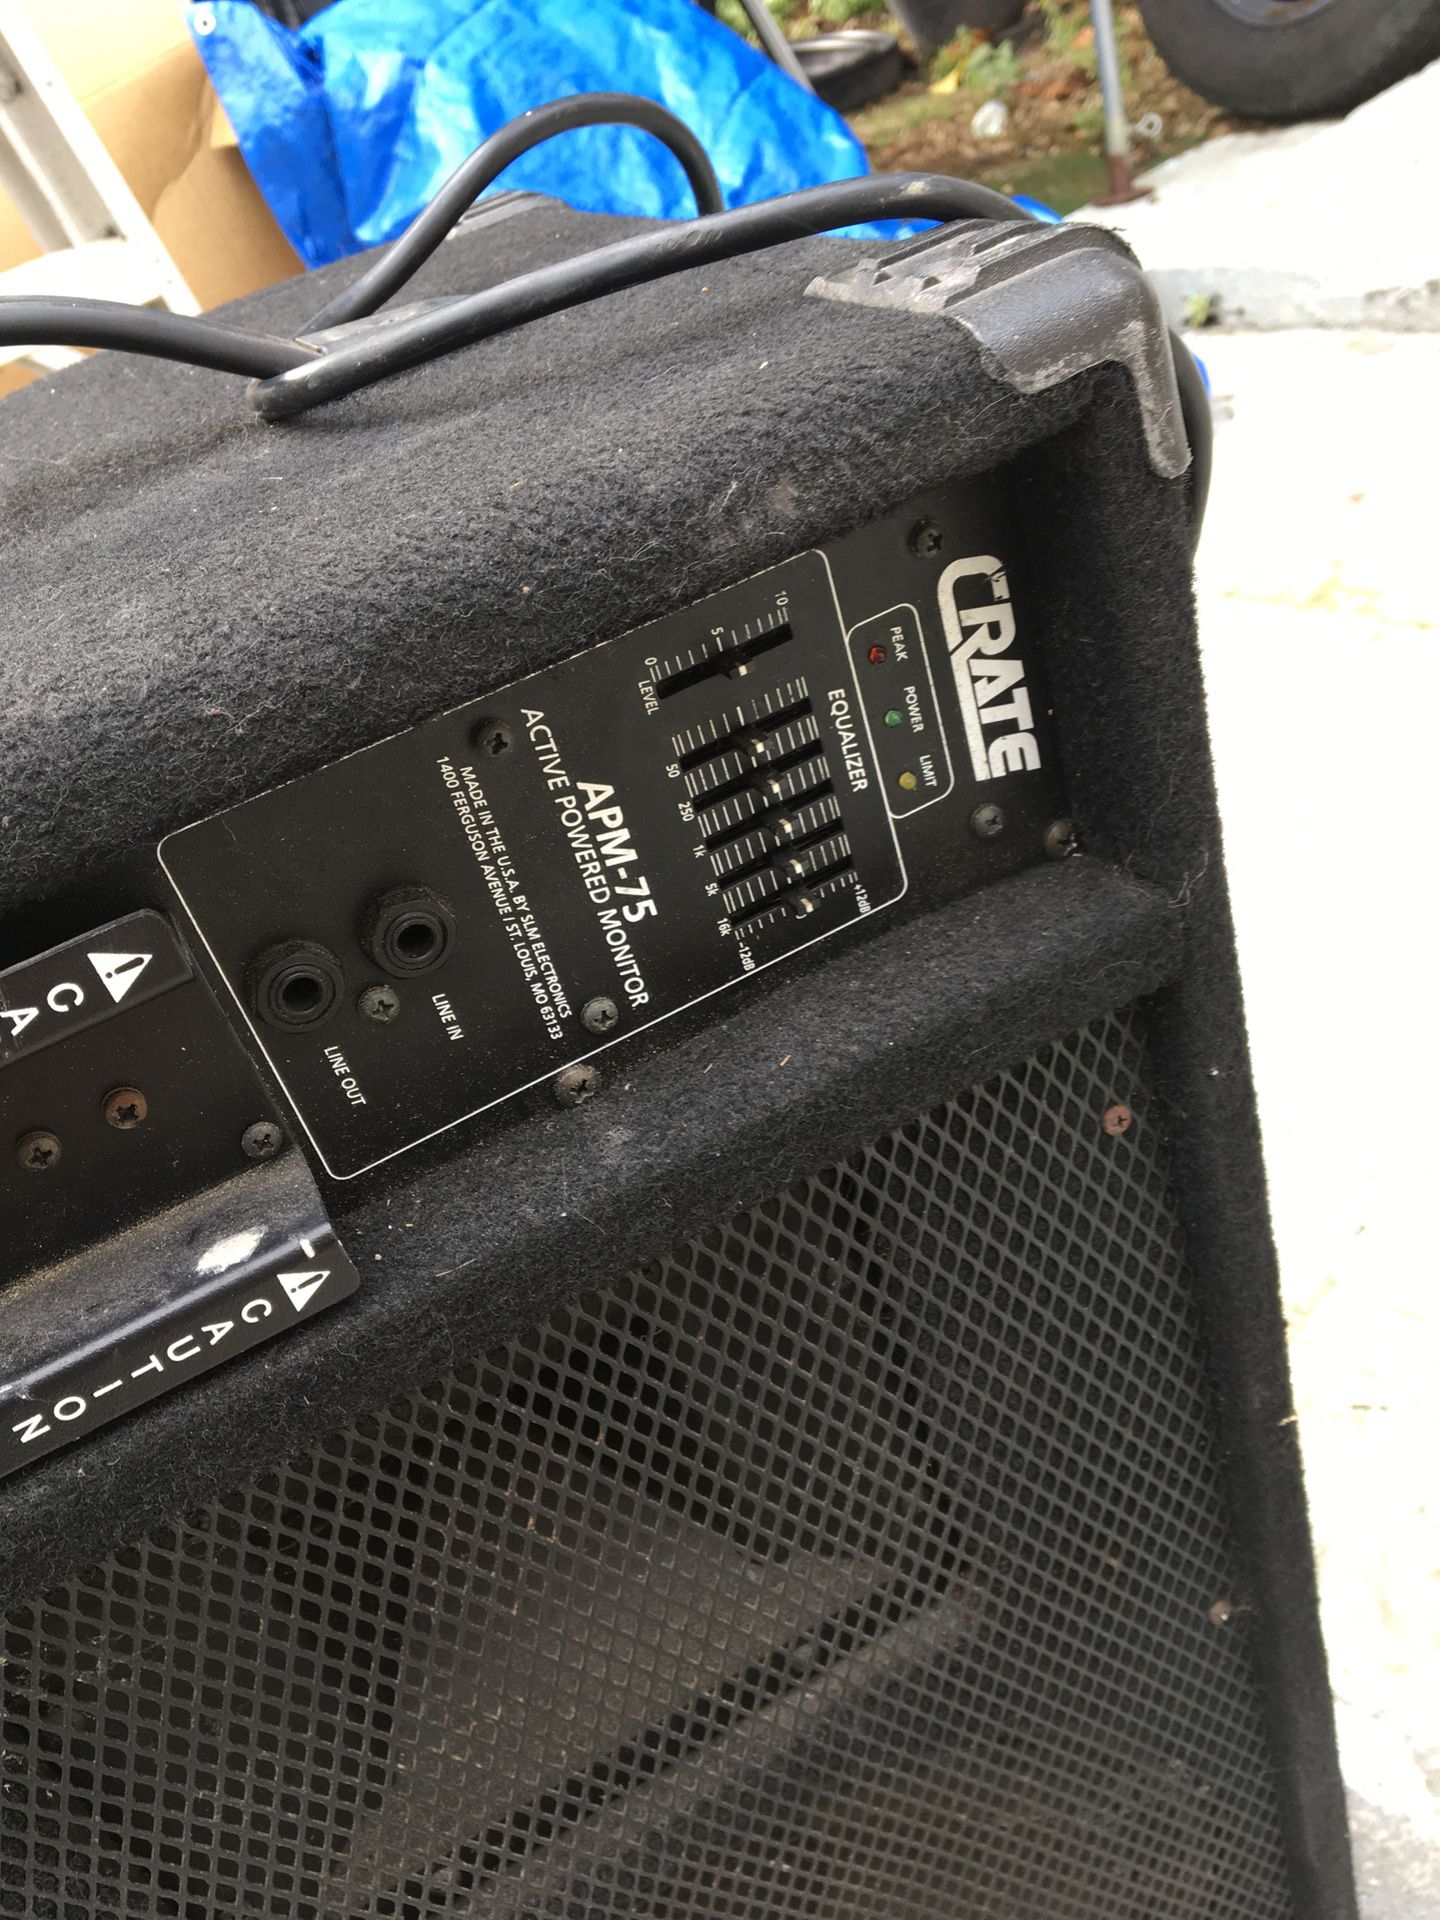 Speaker/amp $50